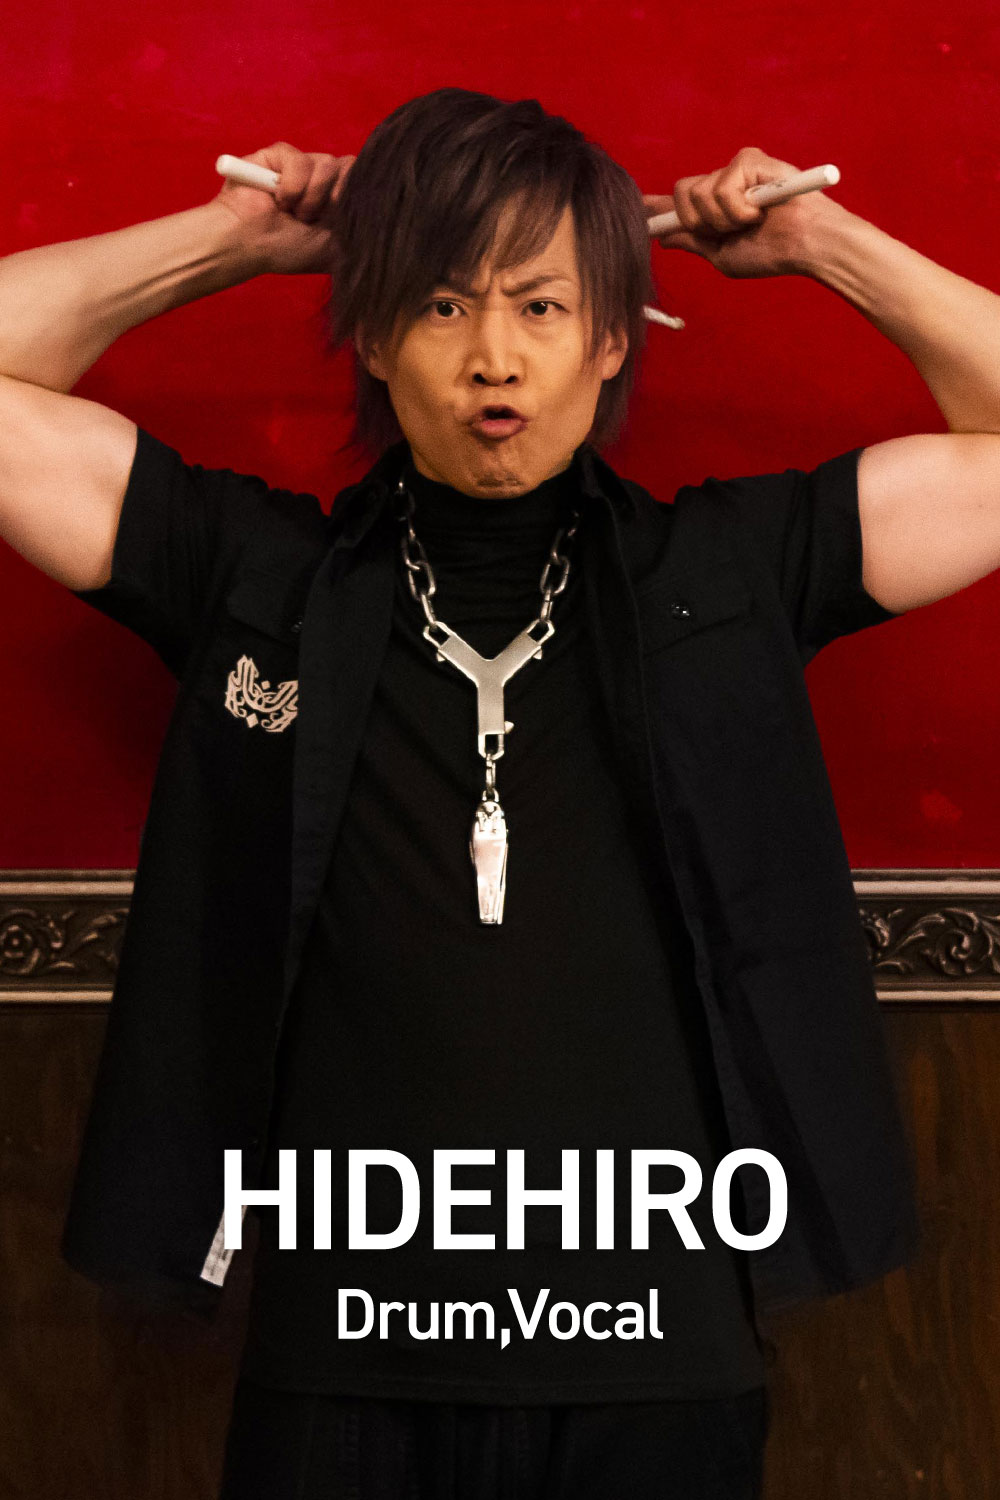 HIDEHIRO Drum,Vocal